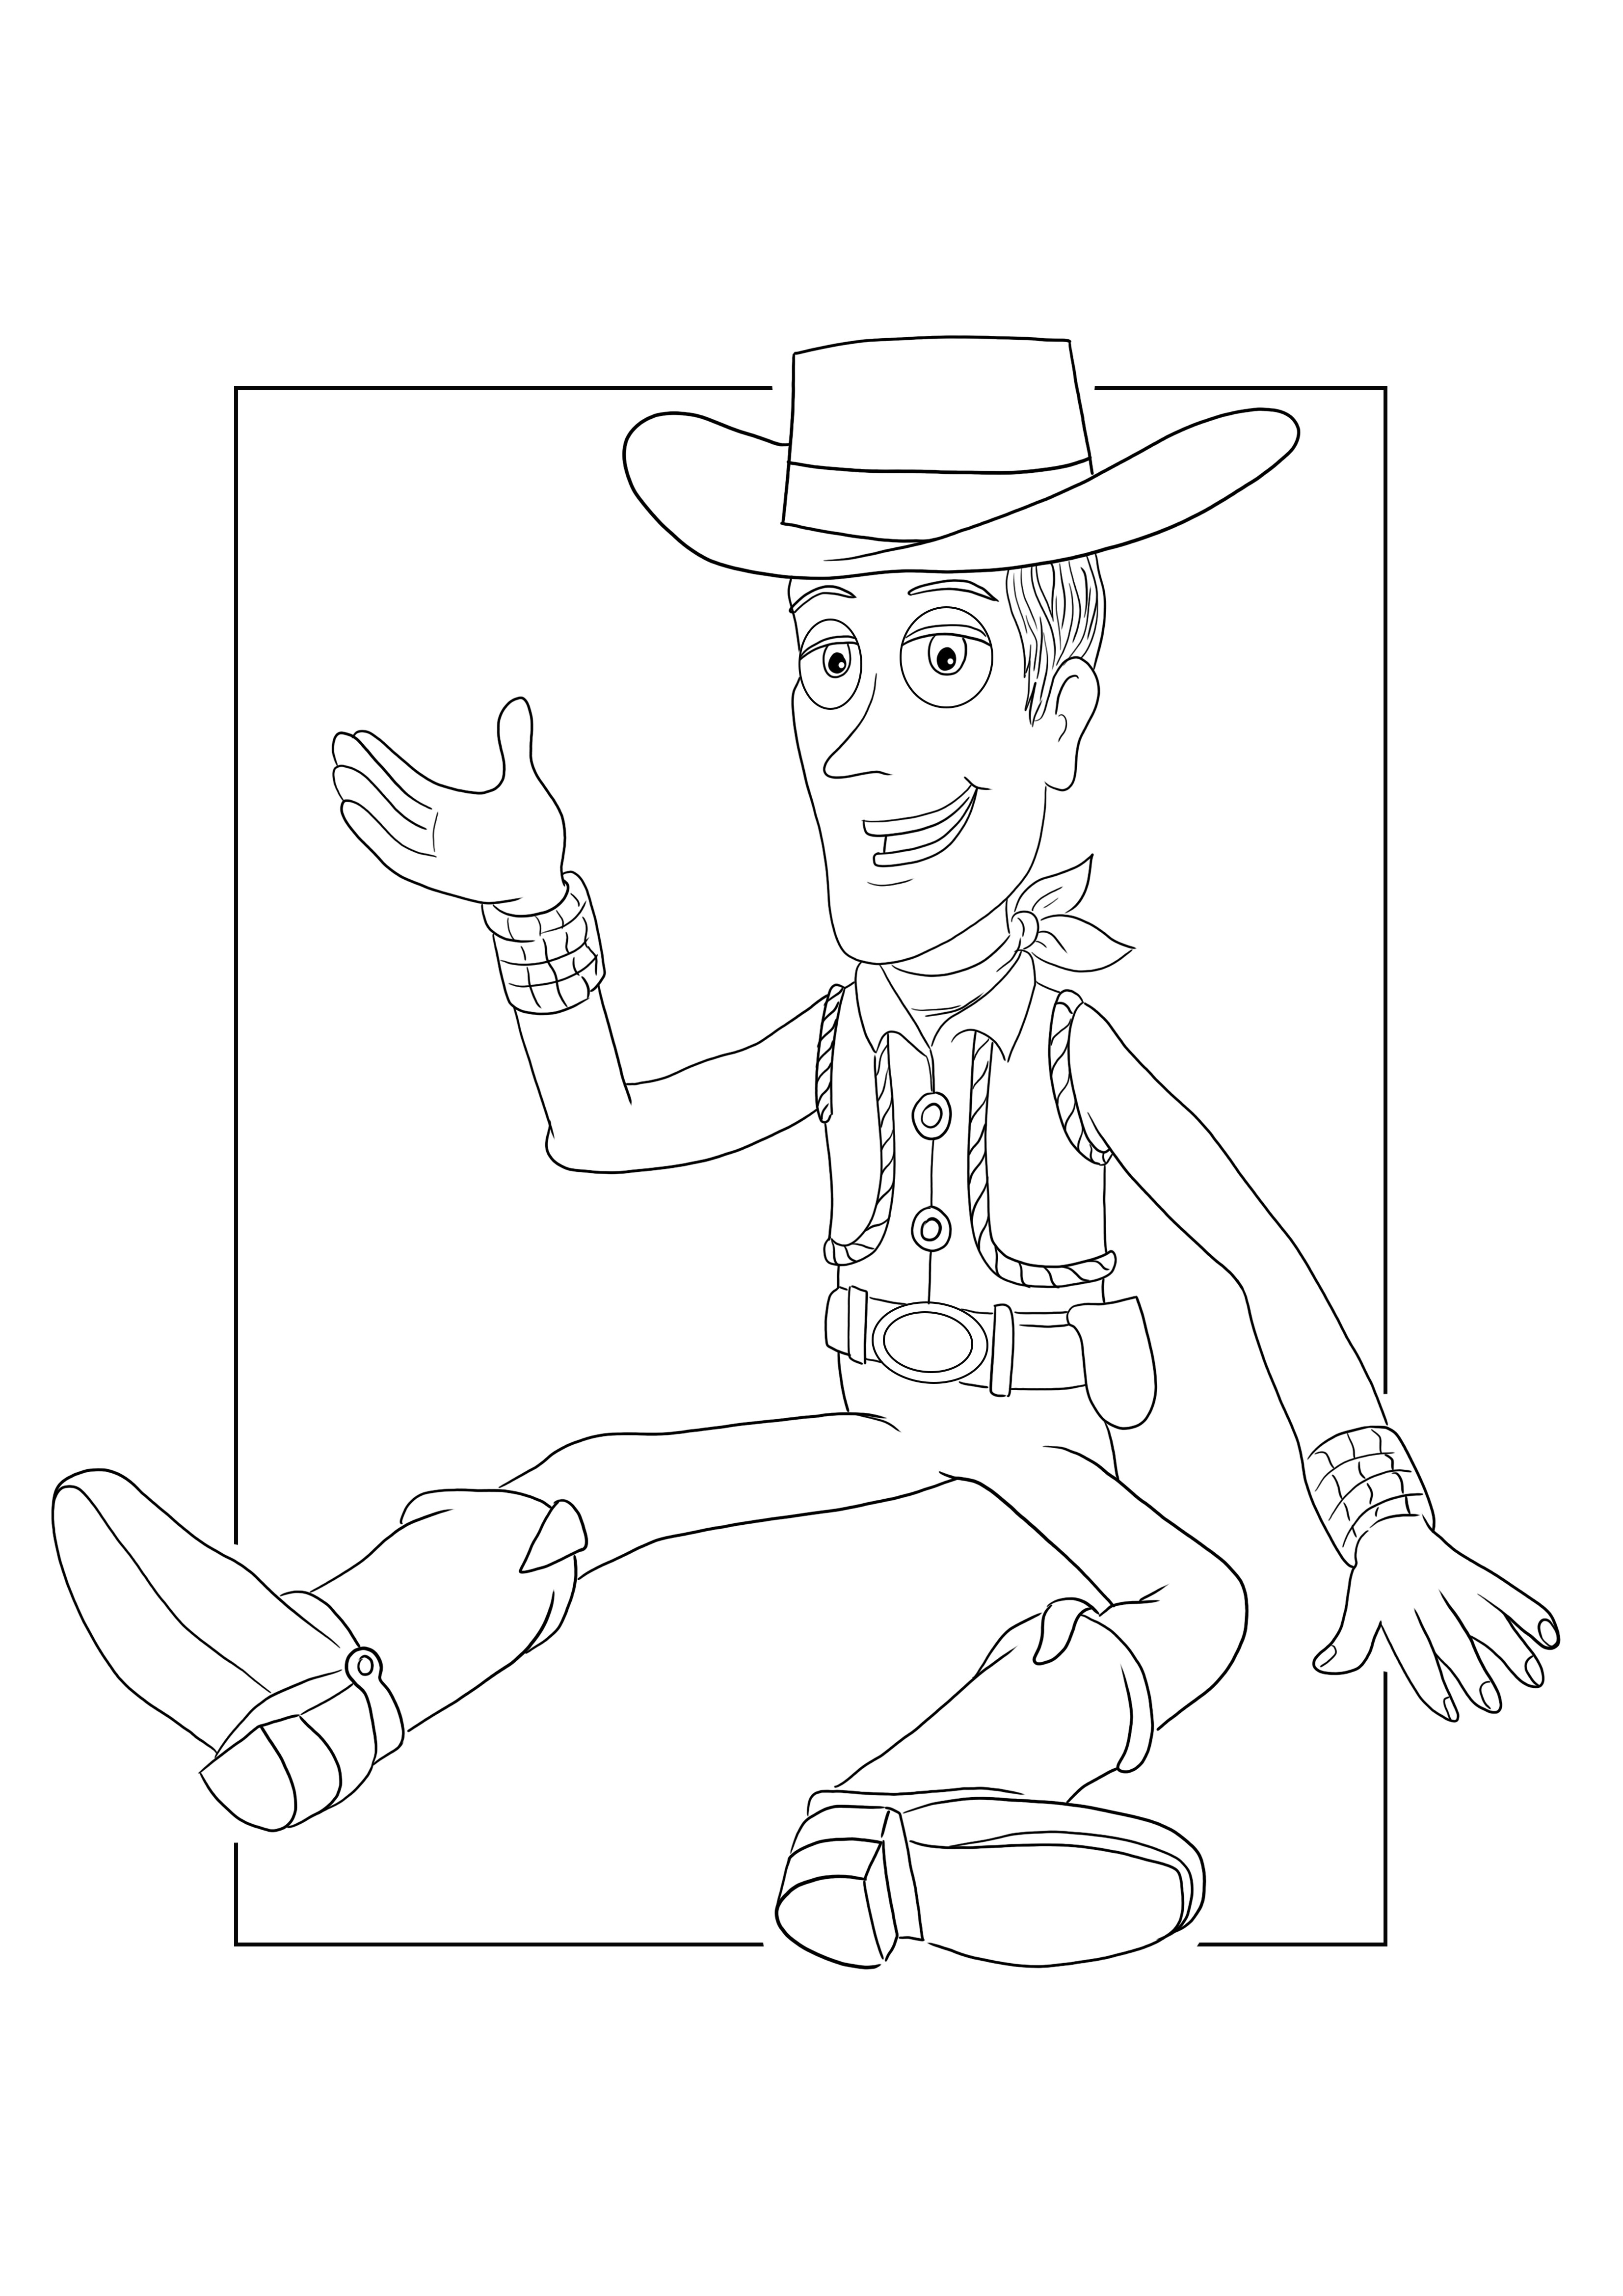 Sheriff Woody kleuren en printen voor gratis blad voor kinderen kleurplaat